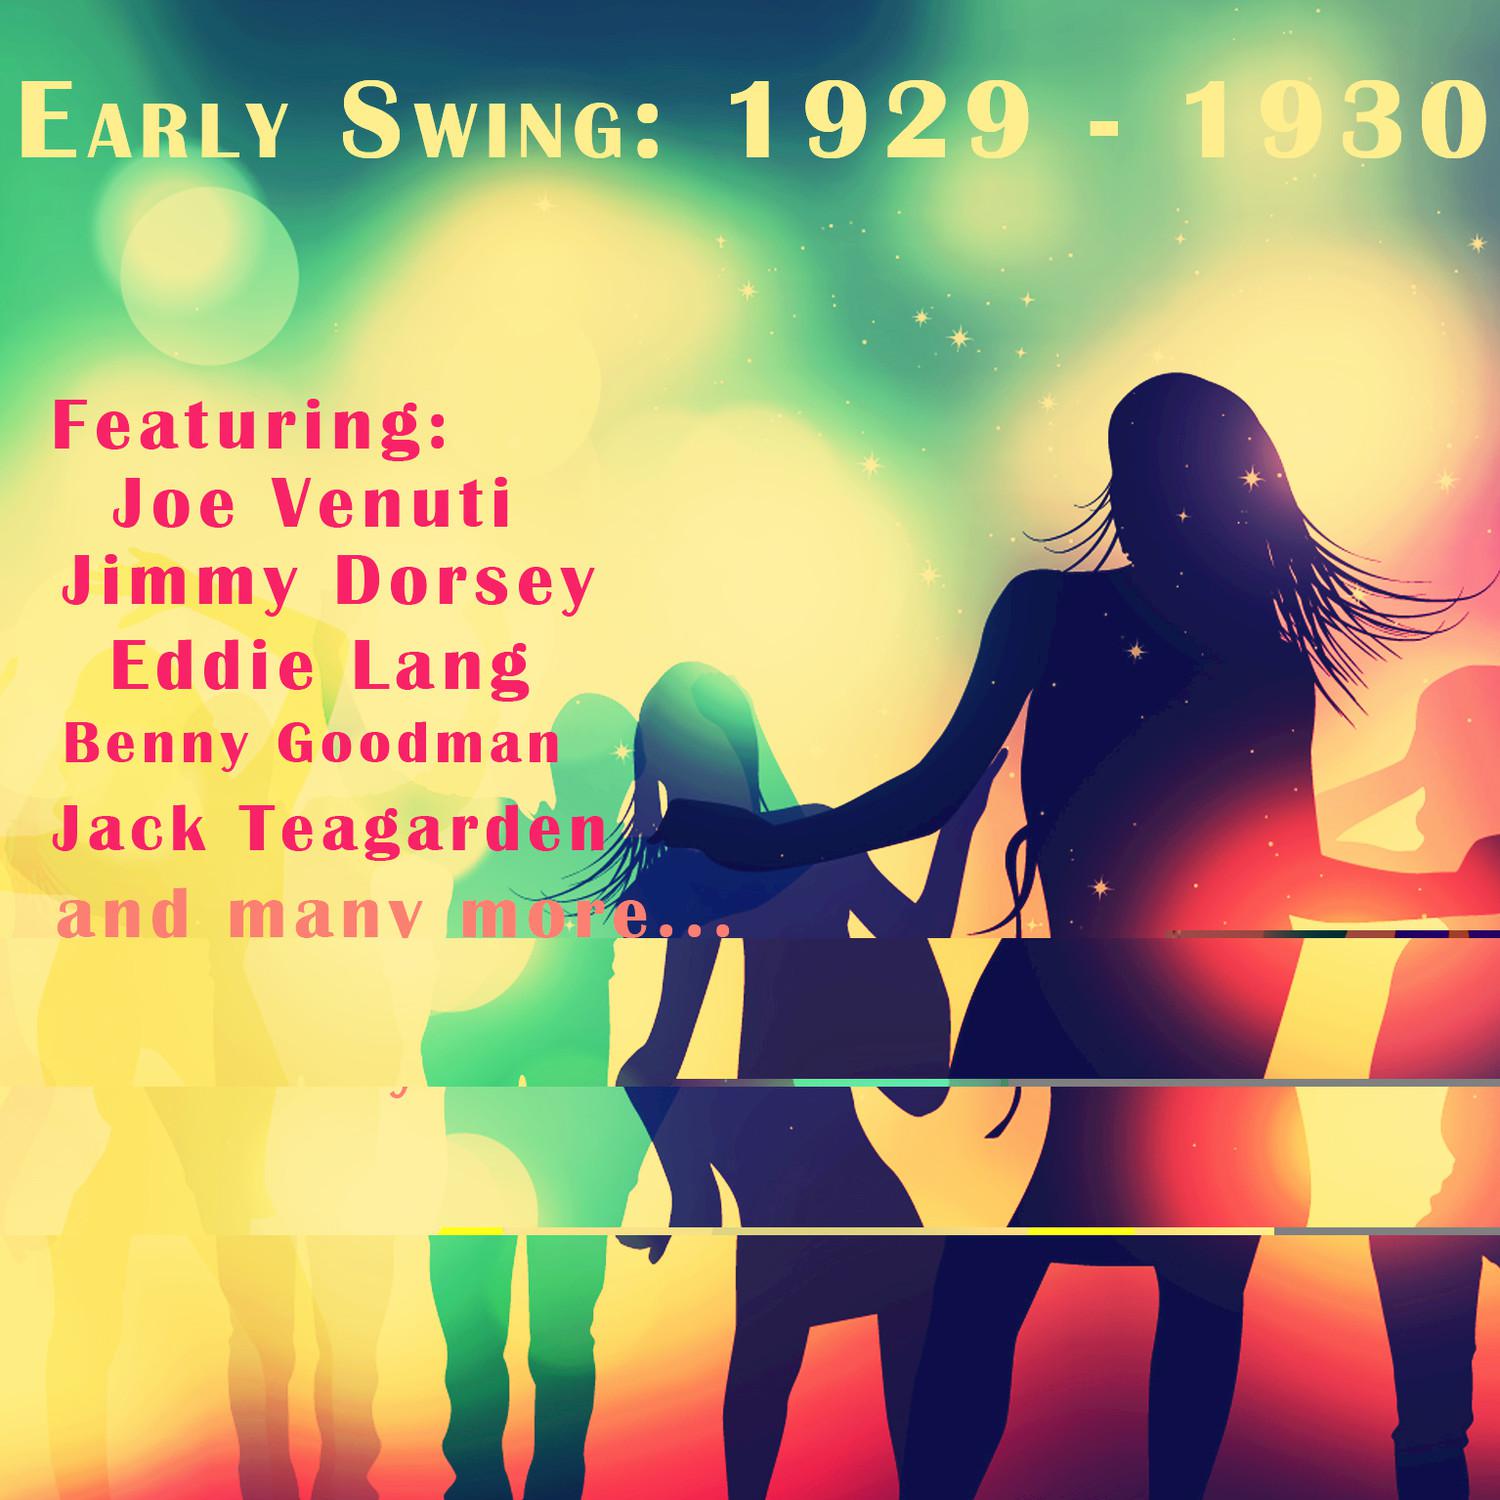 Early Swing: 1929 - 1930